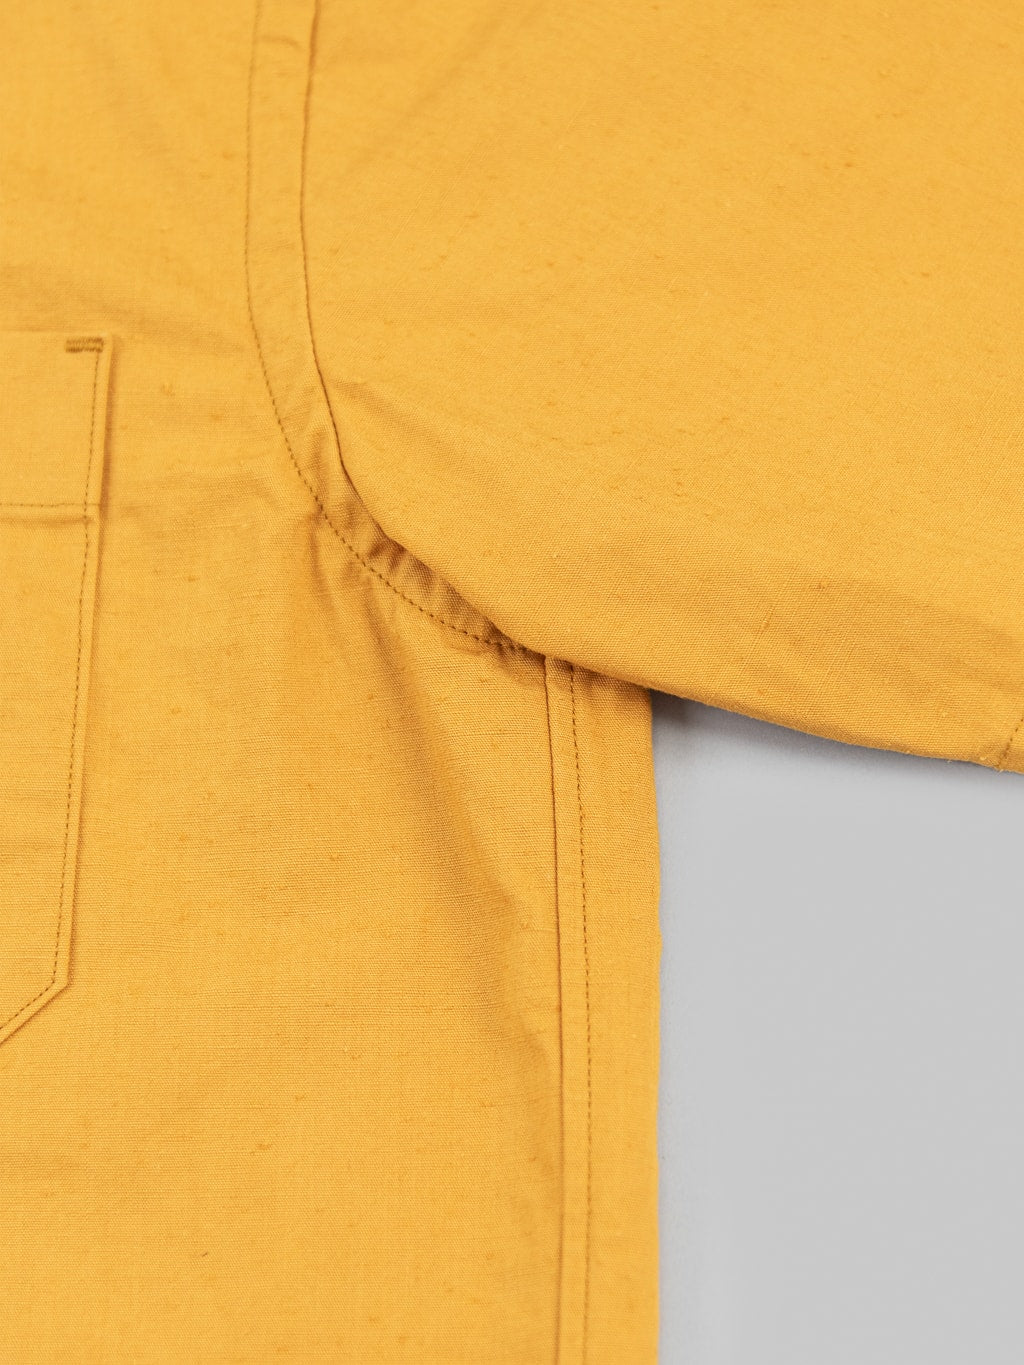 ues denim mechanic shirt sleeves shirt pumpkin yellow cotton